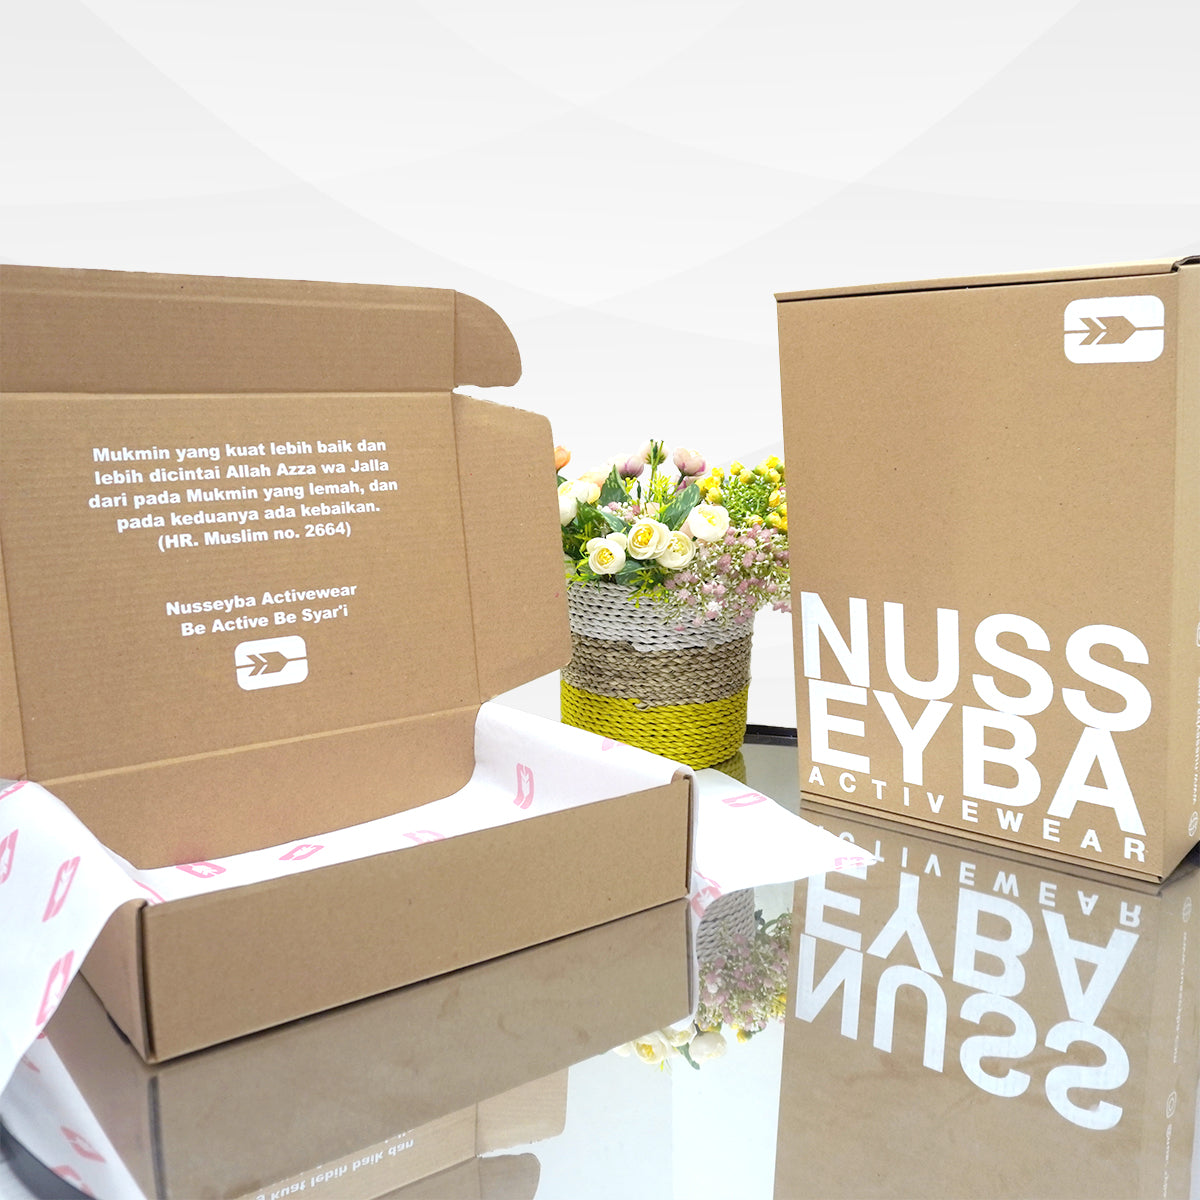 Nusseyba Box Packaging - Brown